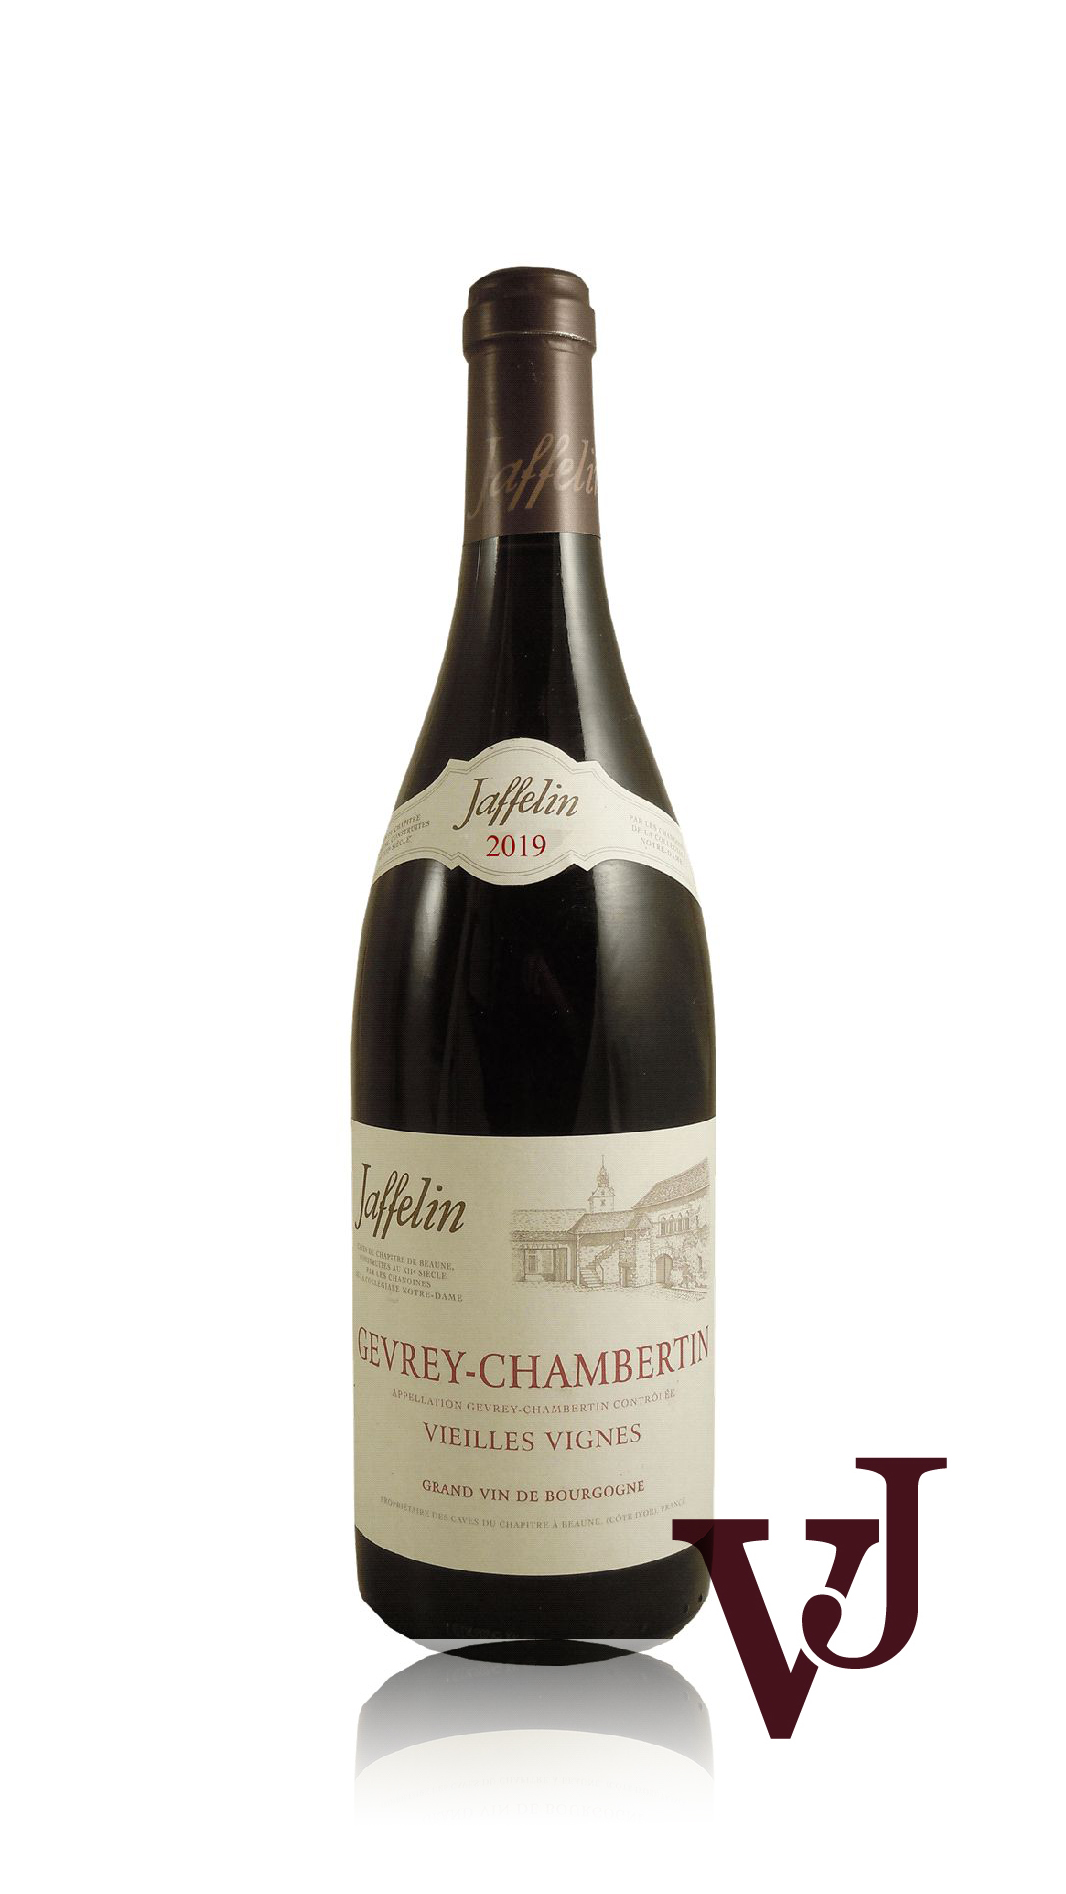 Rött Vin - Jaffelin artikel nummer 5389901 från producenten Jaffelin från området Frankrike